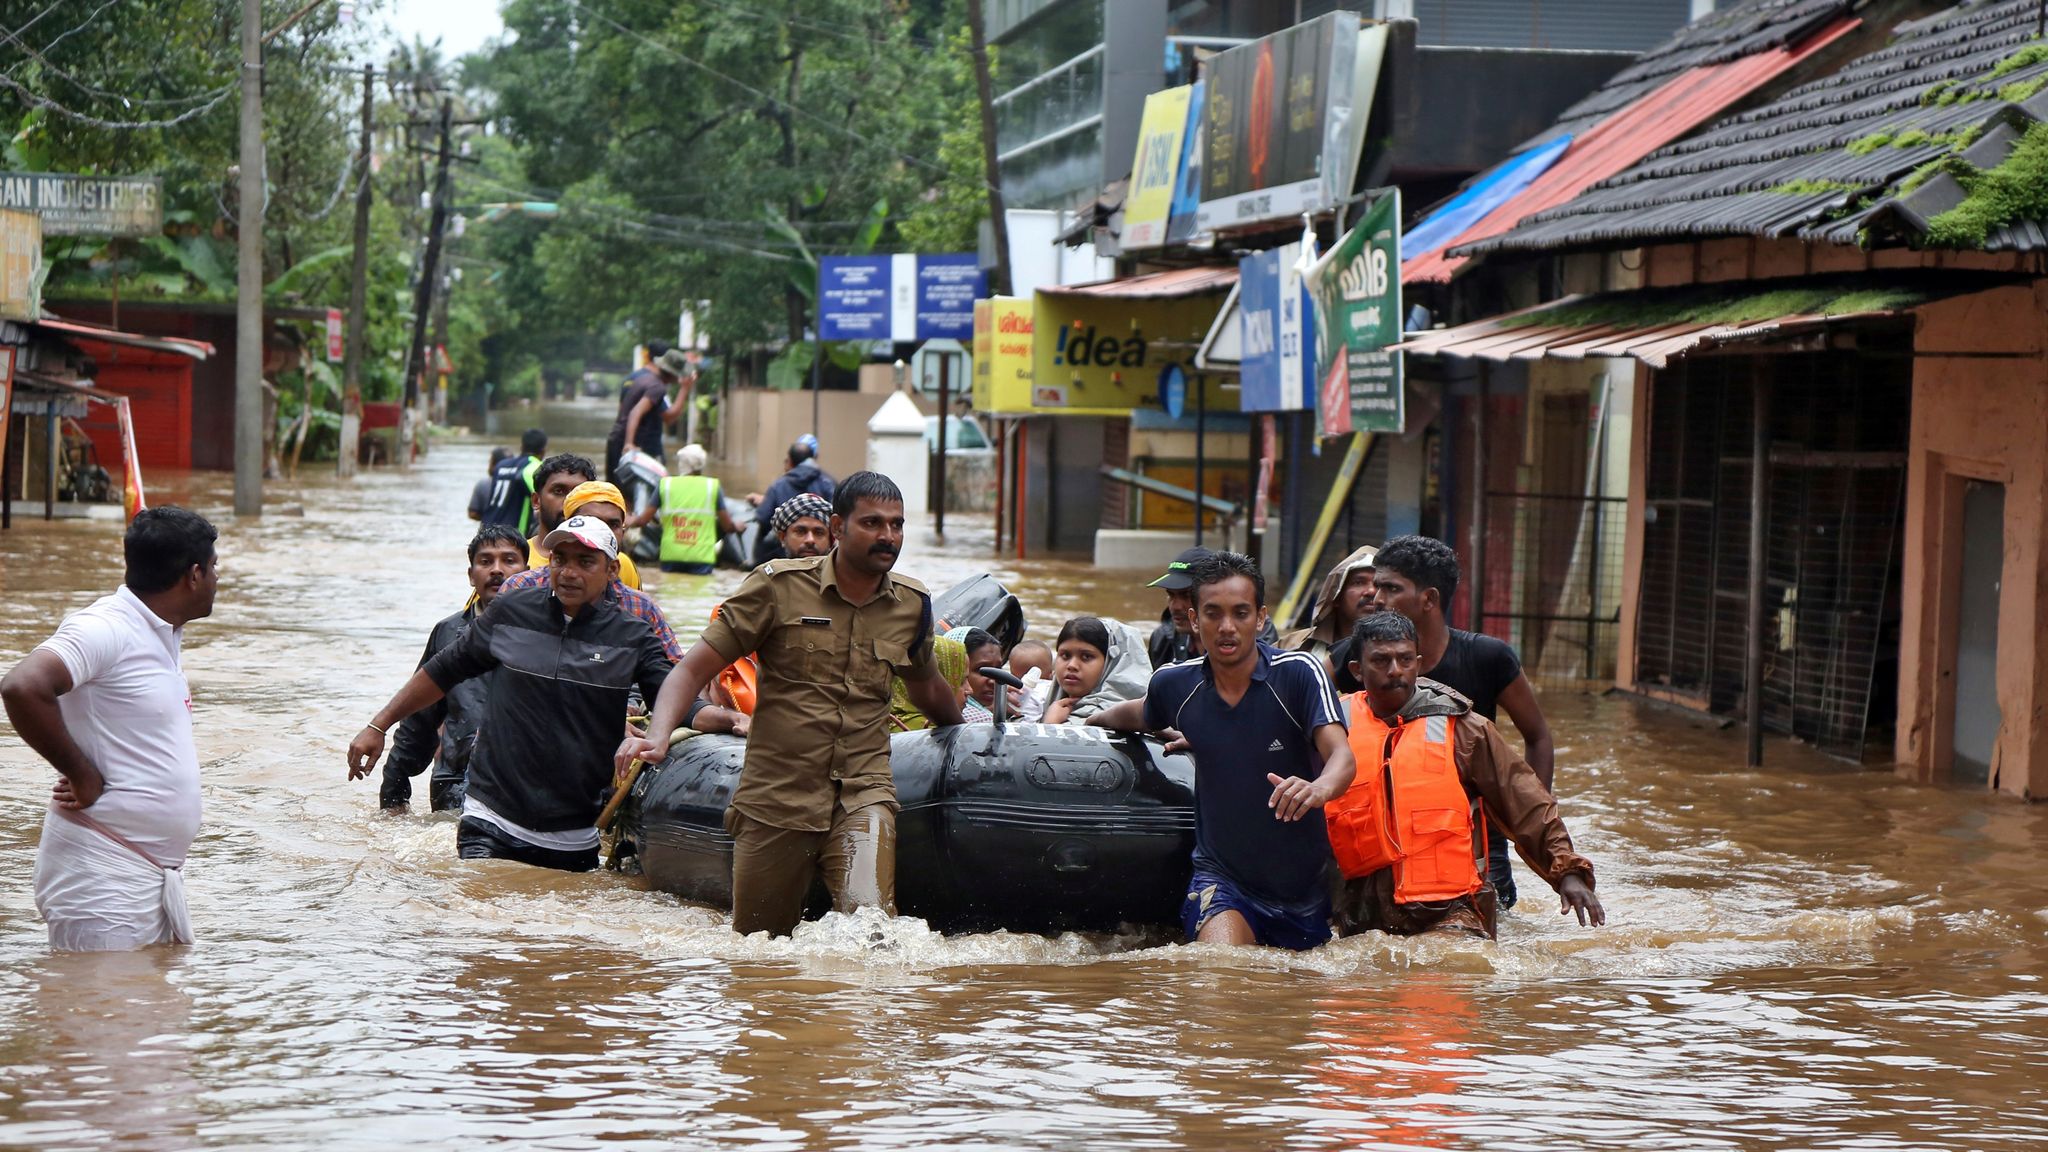 case study of flood in kerala 2018